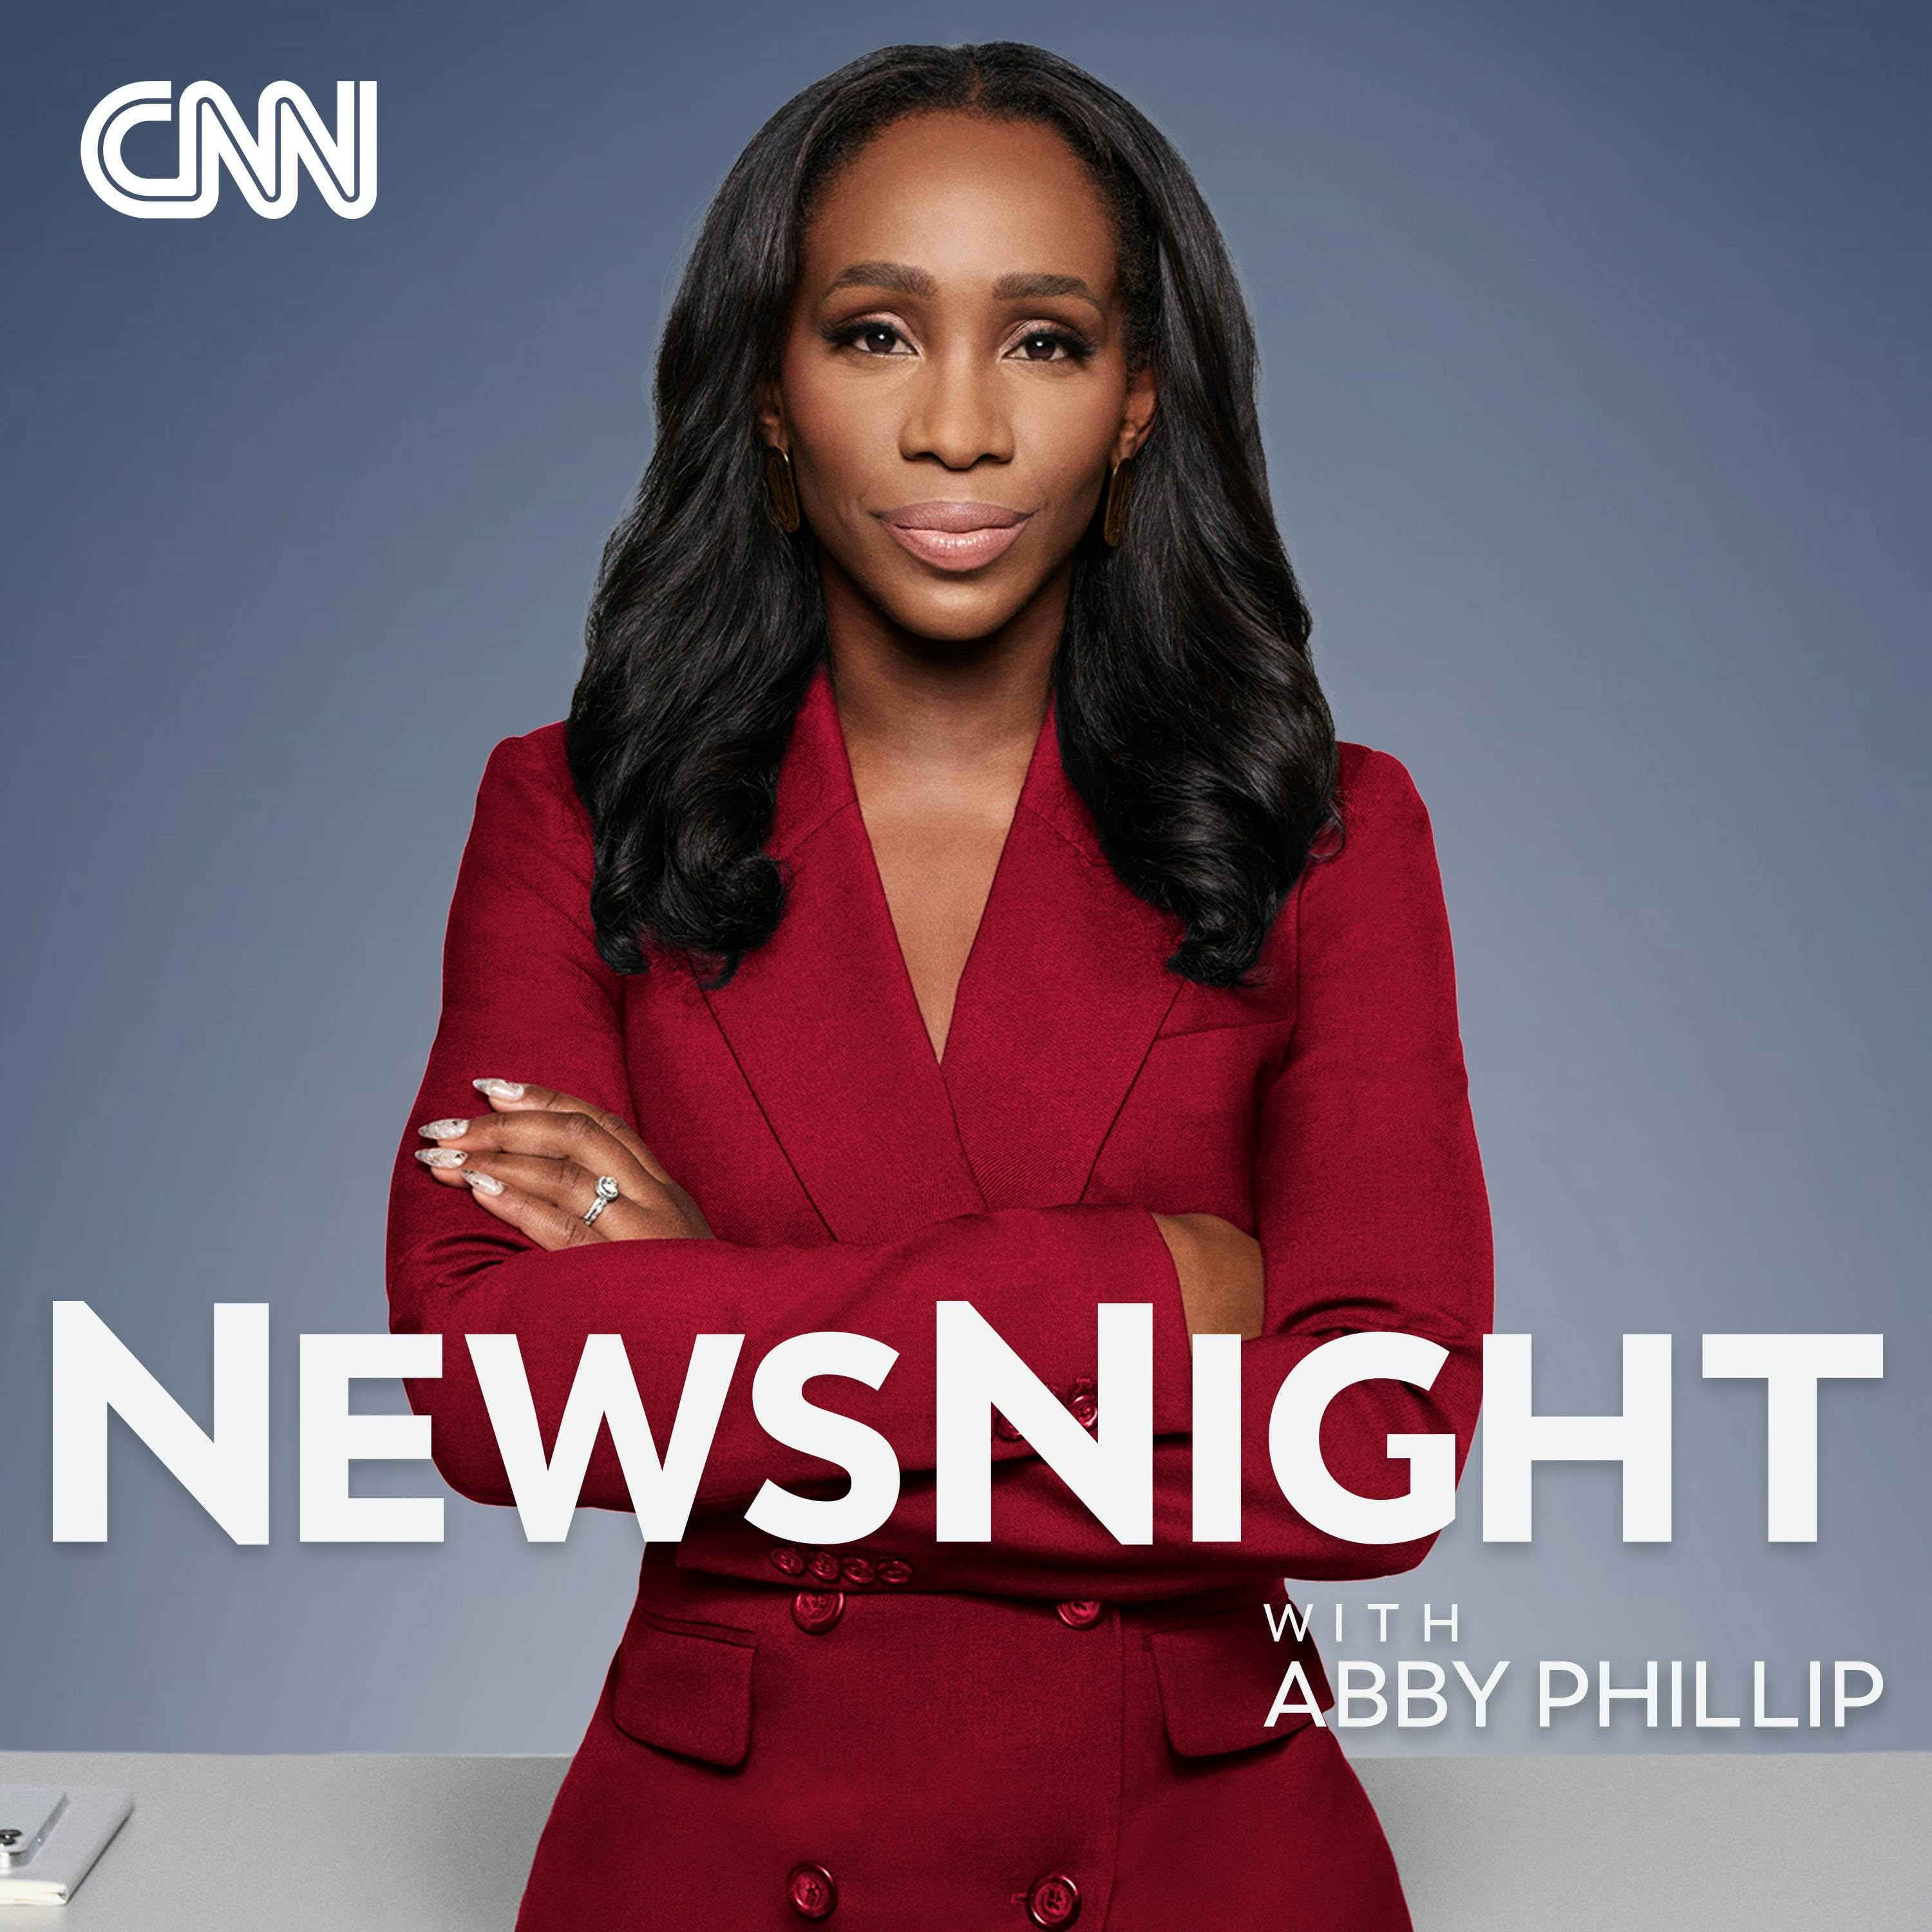 CNN NewsNight with Abby Phillip